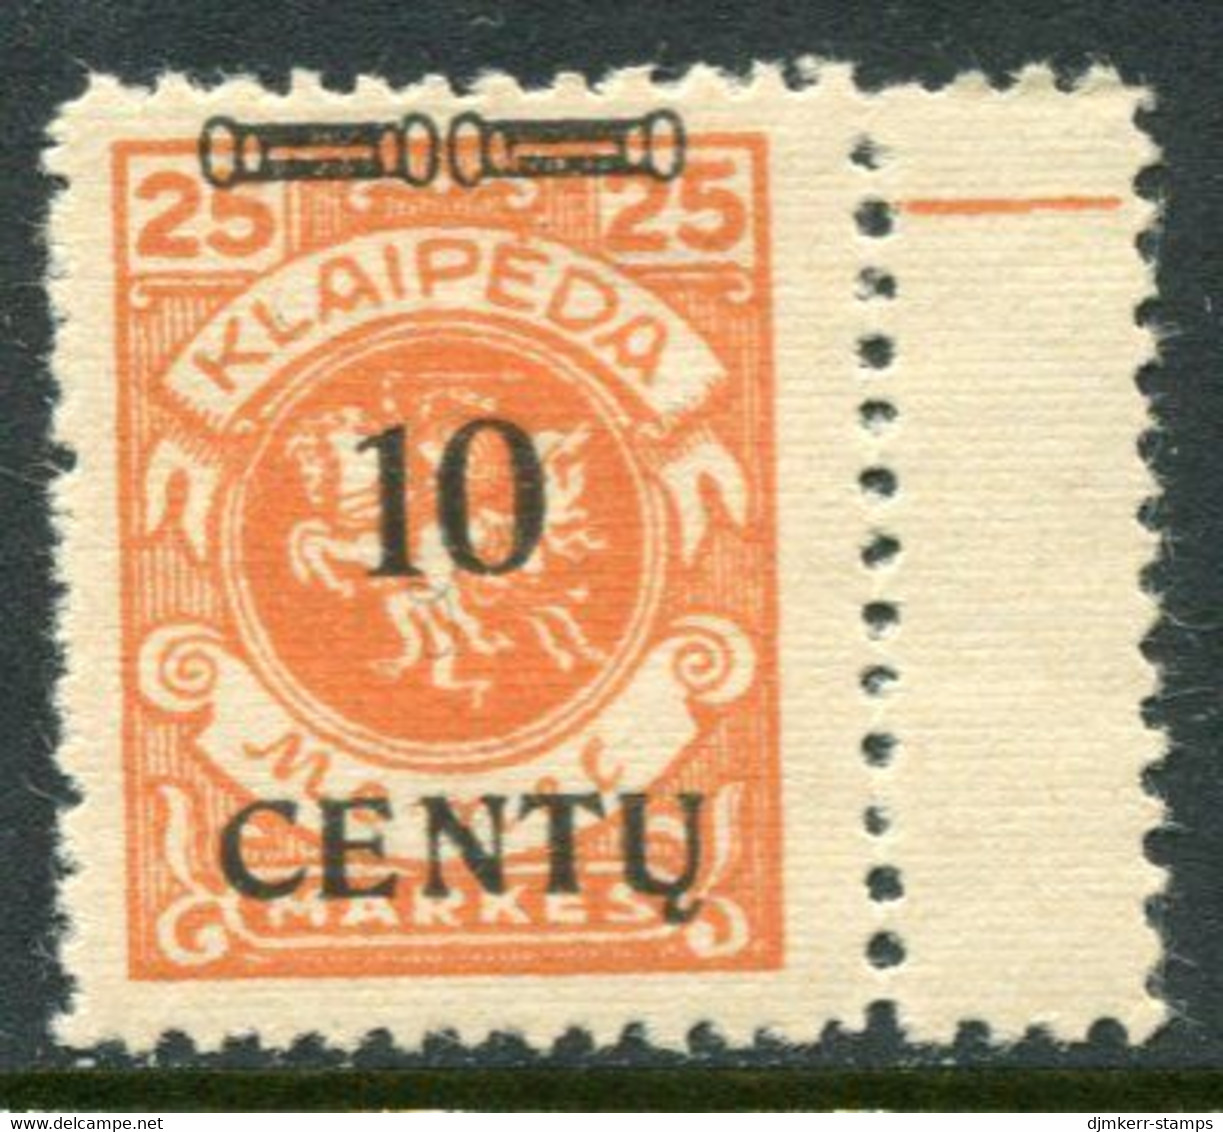 MEMEL (Lithuanian Occ) 1923 ( 16 April) Surcharge 10 C. On 25 M. Arms. LHM / *.  Michel 169 A III + 100% - Memel (Klaipeda) 1923